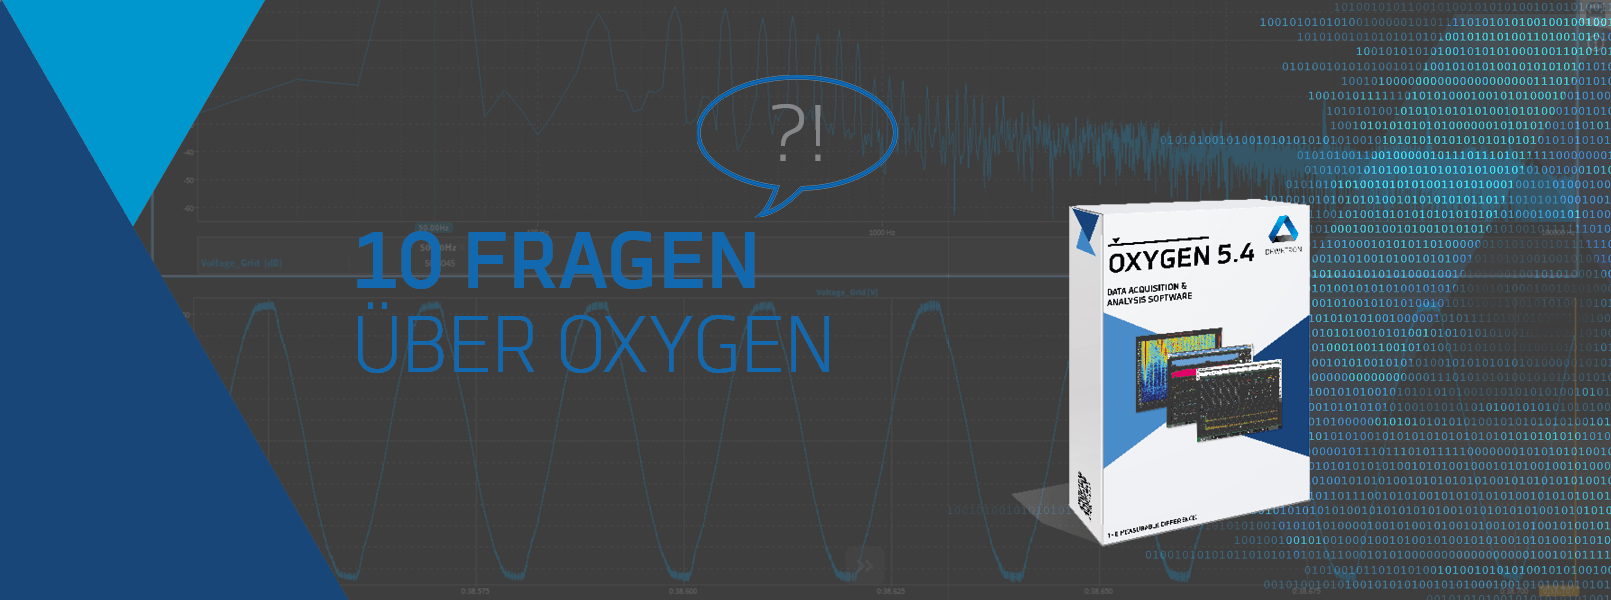 10-fragen-über-oxygen